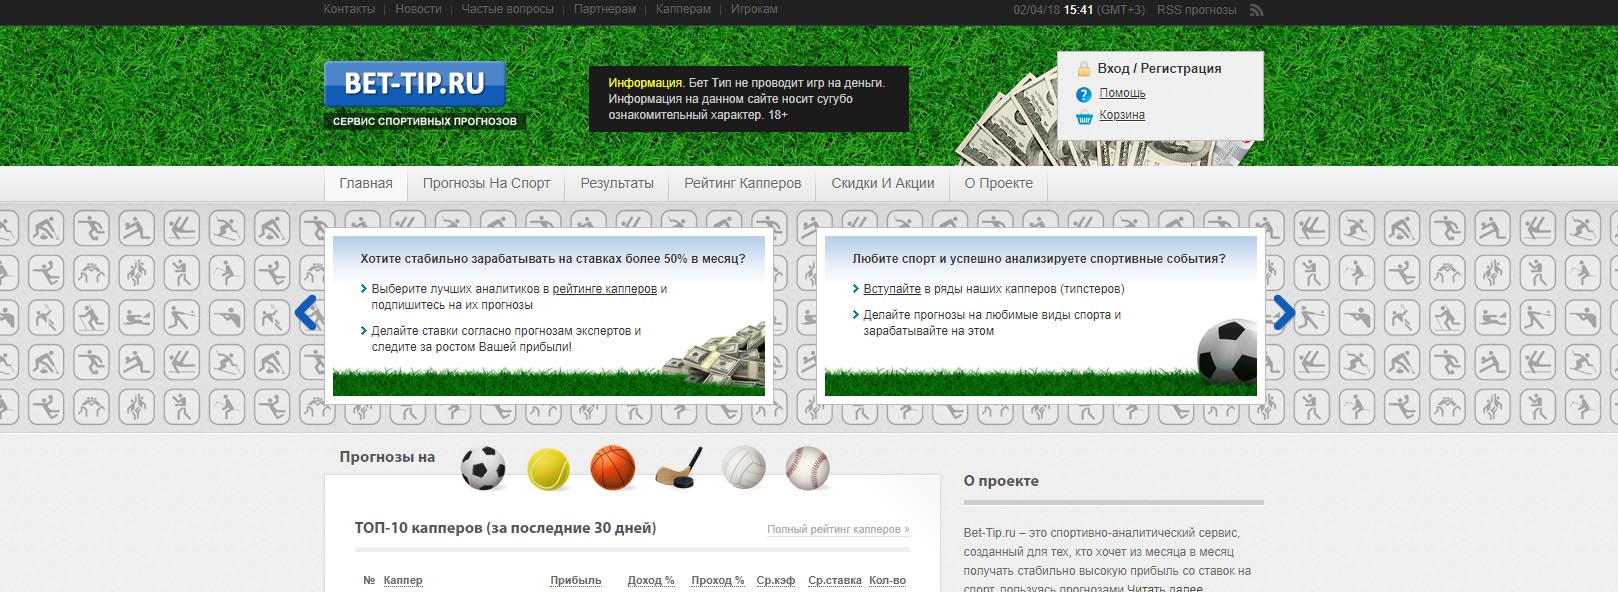 Внешний вид сайта bet-tip.ru